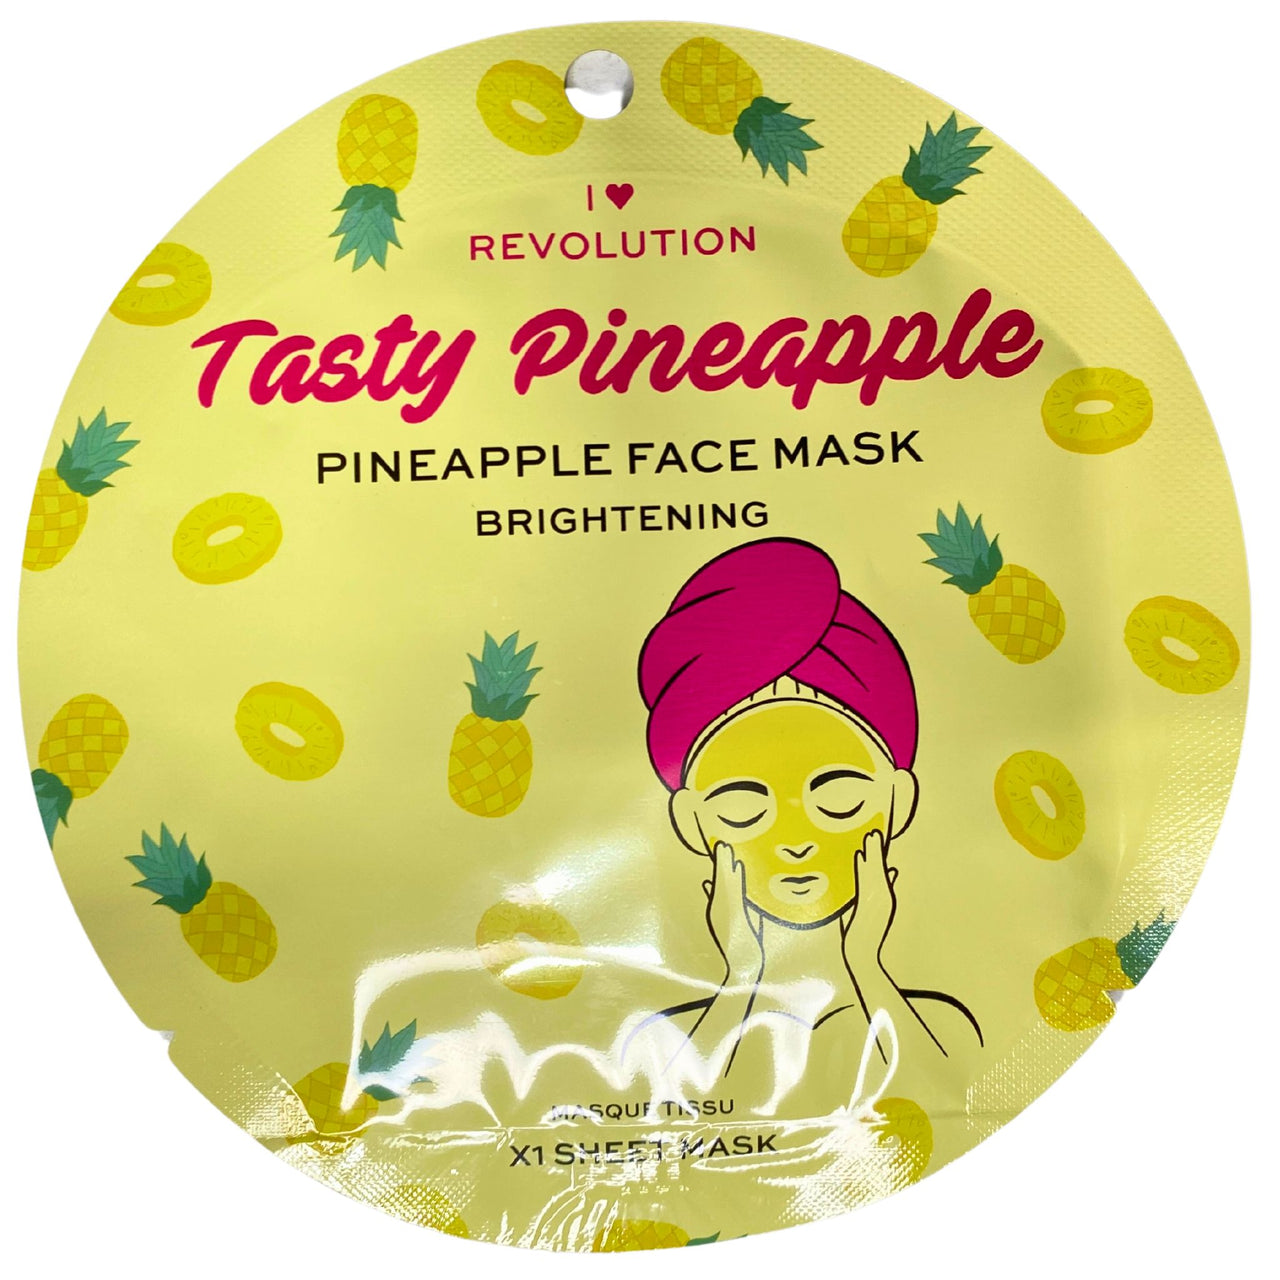 I HEART REVOLUTION Tasty Pineapple Pineapple Face Mask